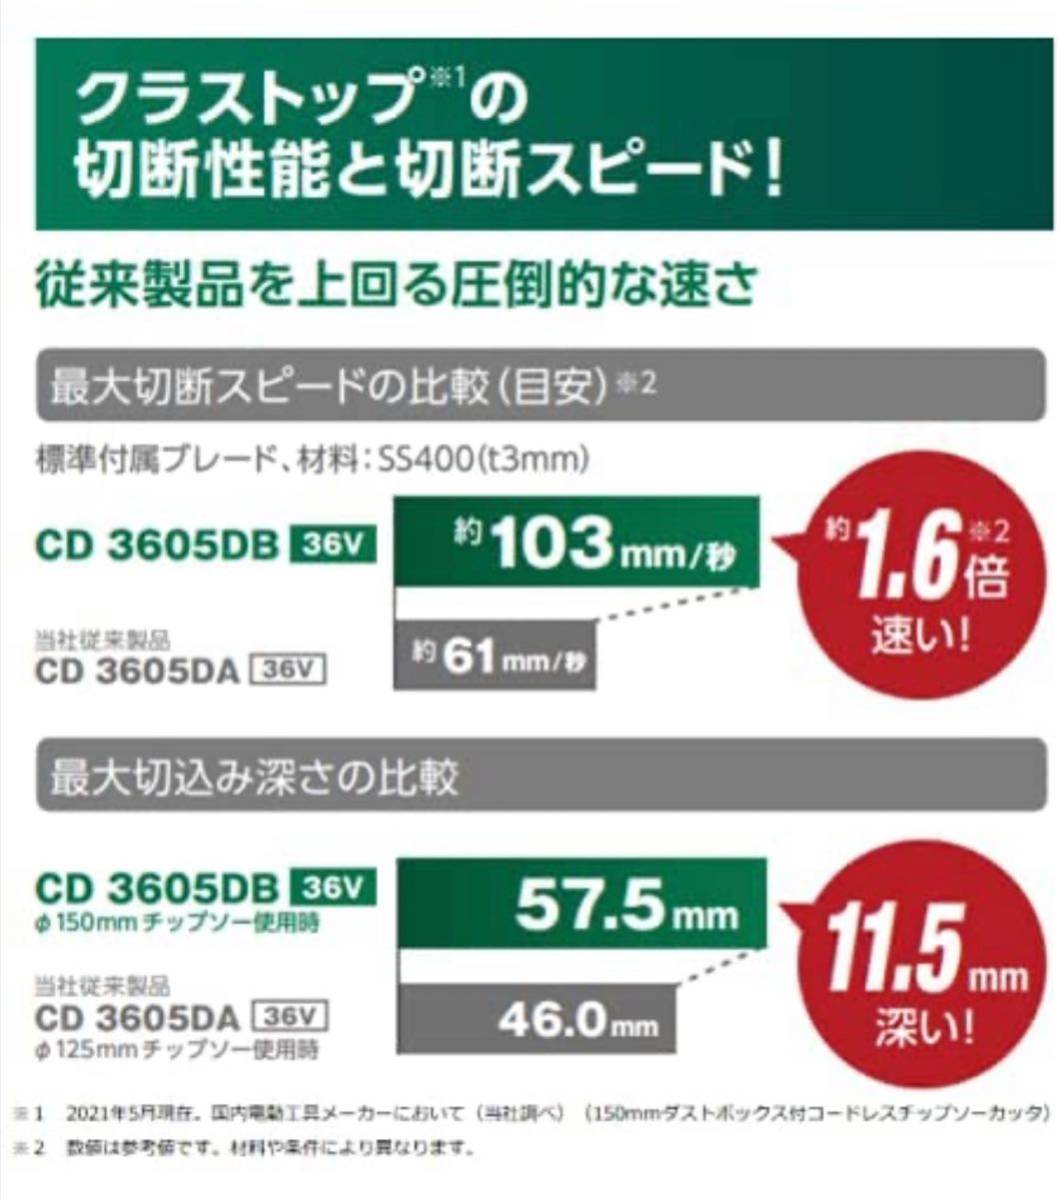 ハイコーキ HiKOKI コードレスチップソーカッタ CD3605DB(XP) 電池+